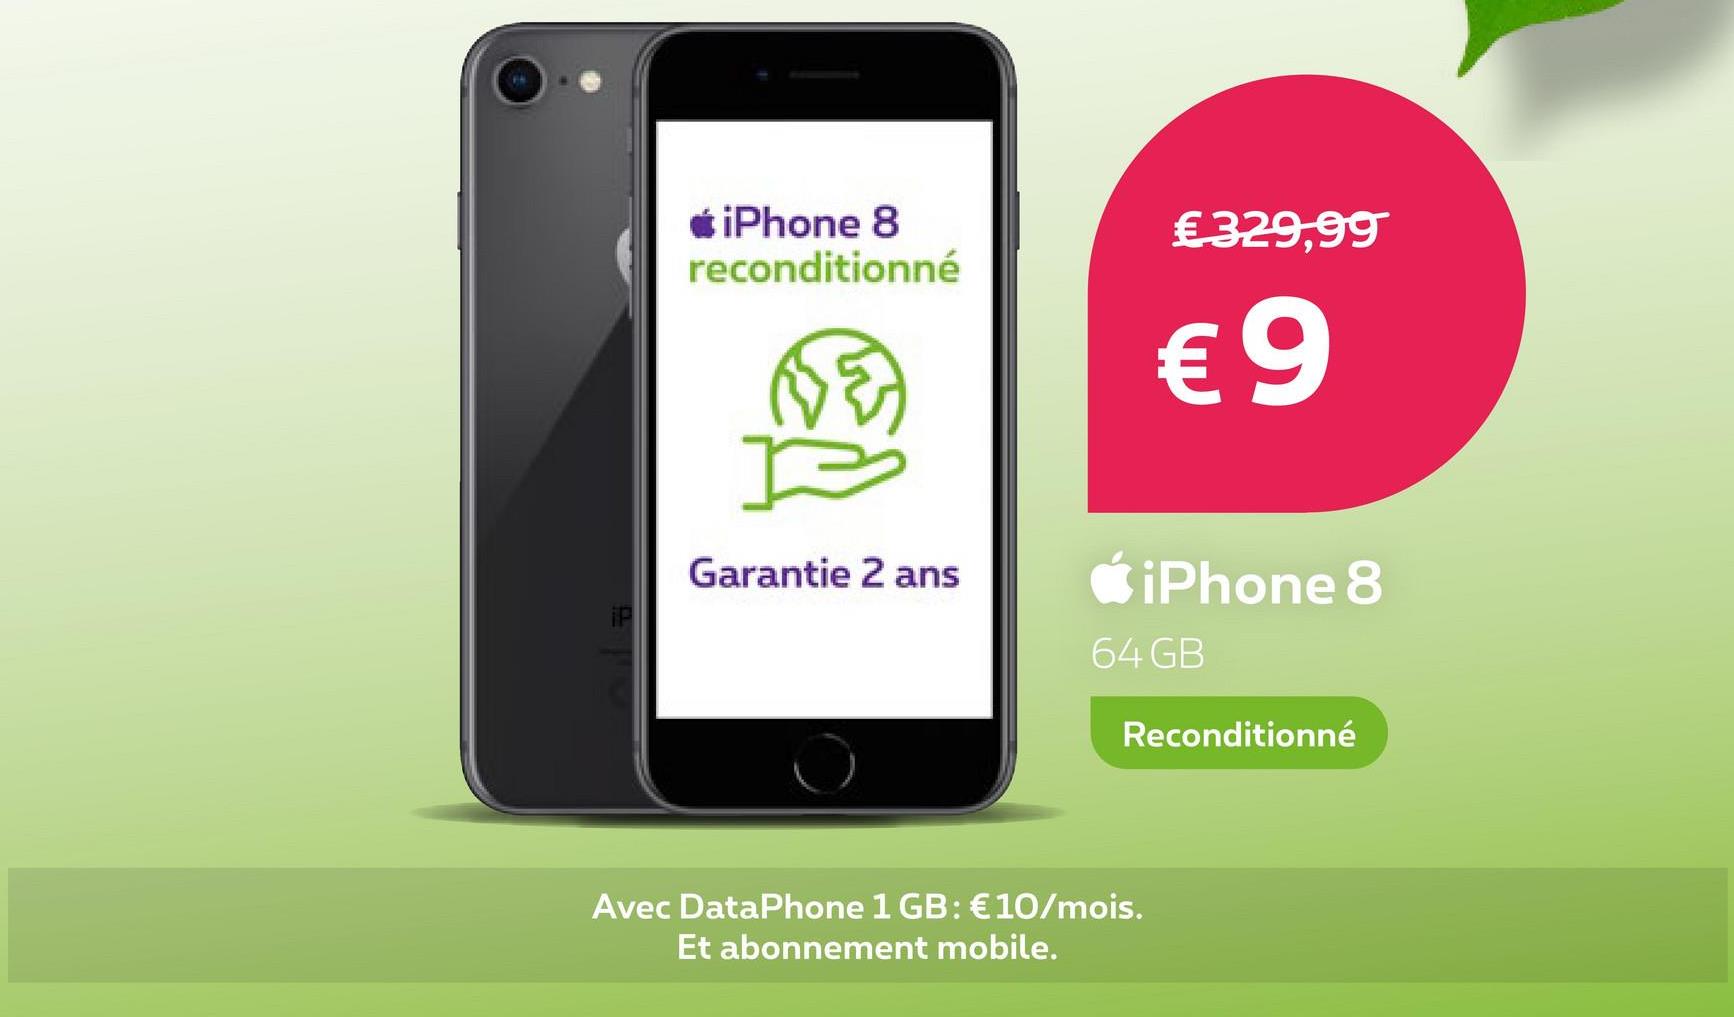 iPhone 8
reconditionné
Garantie 2 ans
€ 329,99
€9
iPhone 8
64 GB
Avec DataPhone 1 GB: € 10/mois.
Et abonnement mobile.
Reconditionné